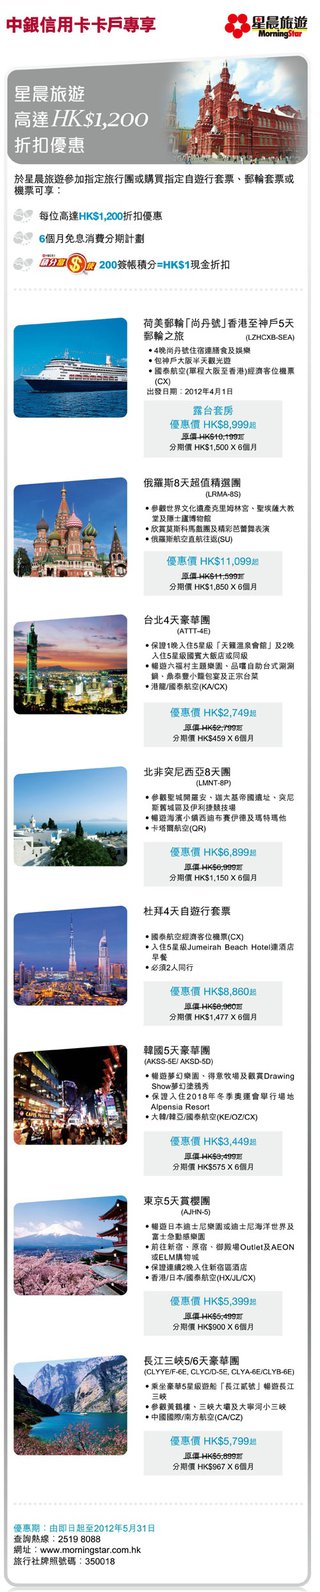 中銀信用卡卡戶專享星晨旅遊高達HK$1,200折扣優惠